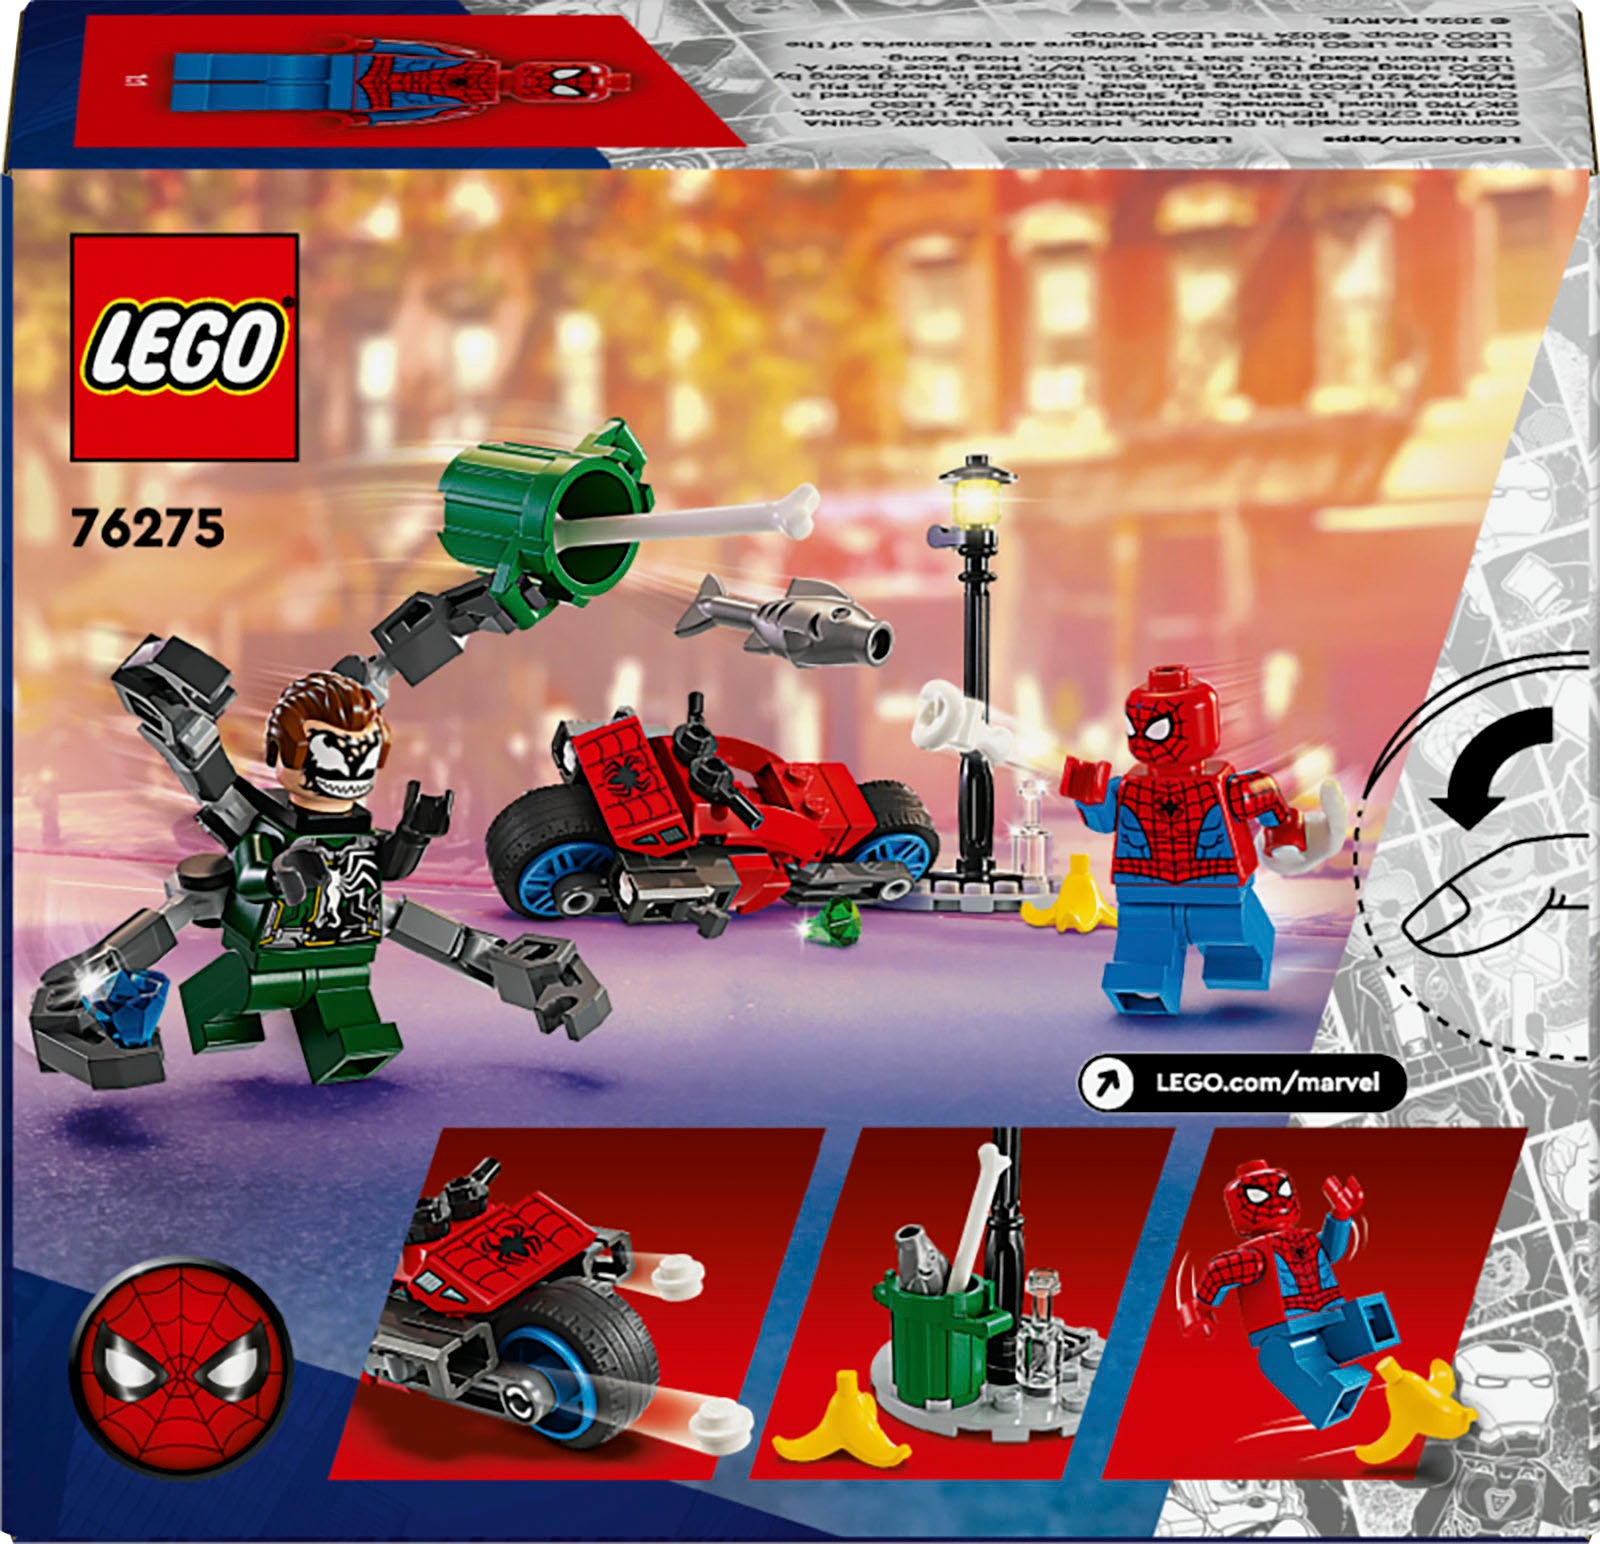 LEGO Marvel Rocket & Baby Groot, baubares Superhelden-Spielzeug